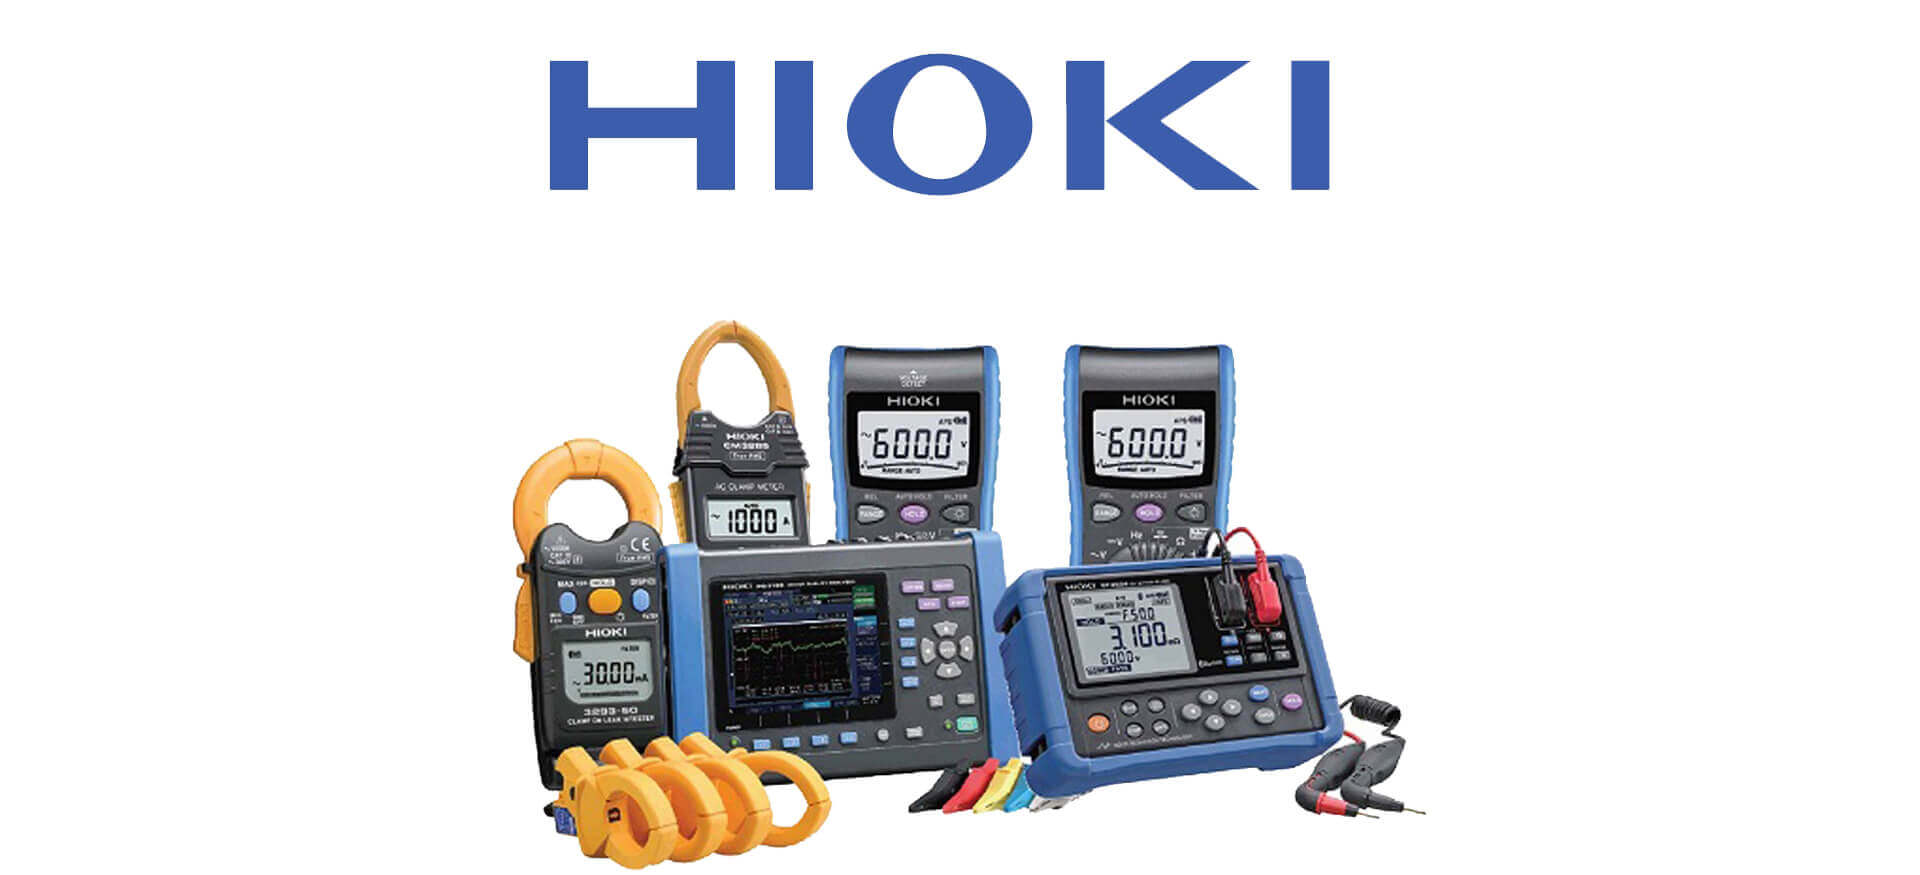 hioki homepage banner 1 - homepage